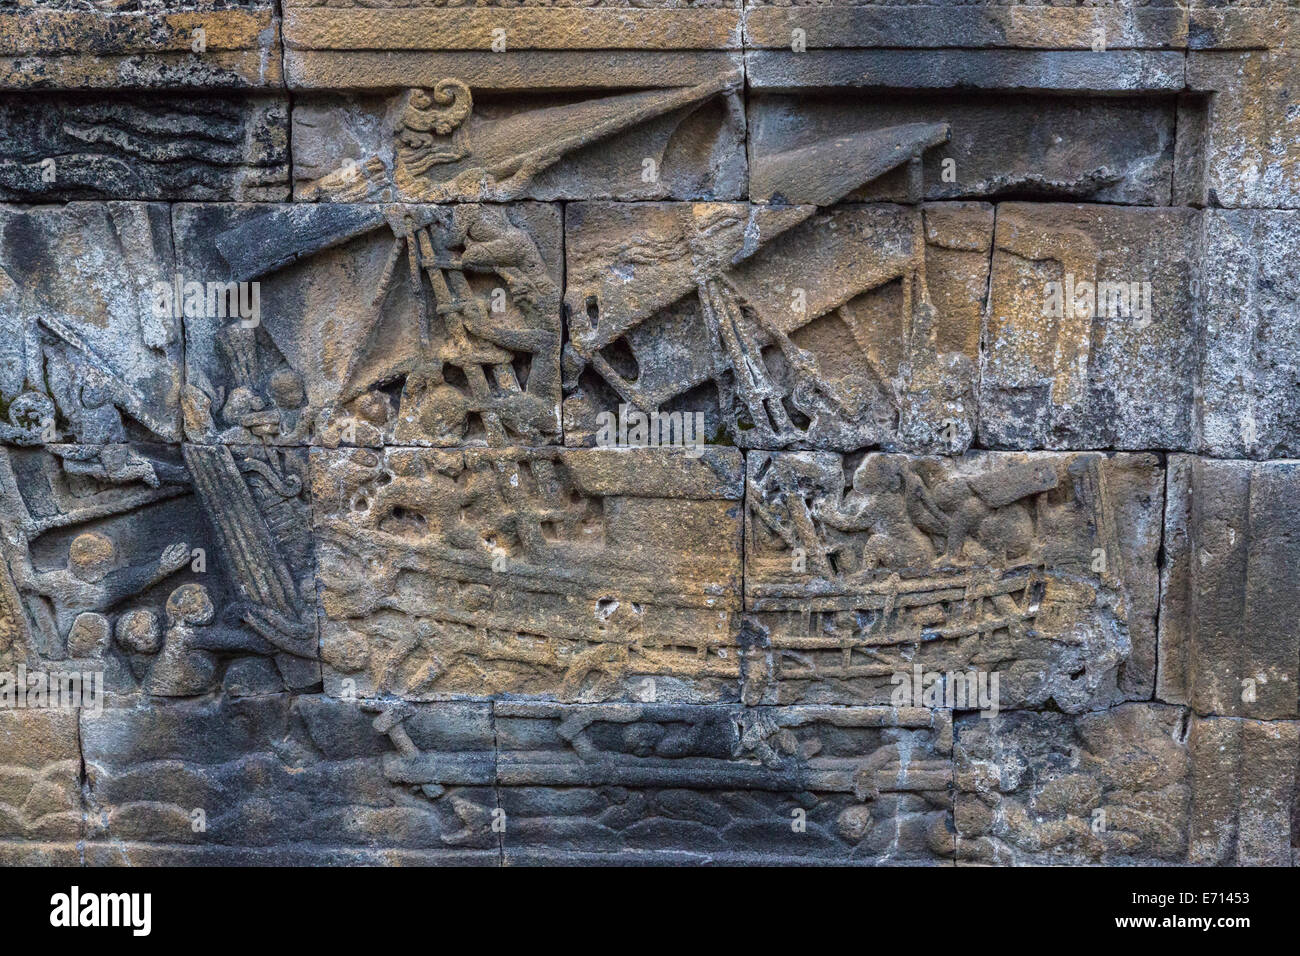 Borobudur, Java, Indonesia. Dettaglio mostrante una barca in bassorilievo incisioni raffiguranti scene della vita di Buddha. Foto Stock